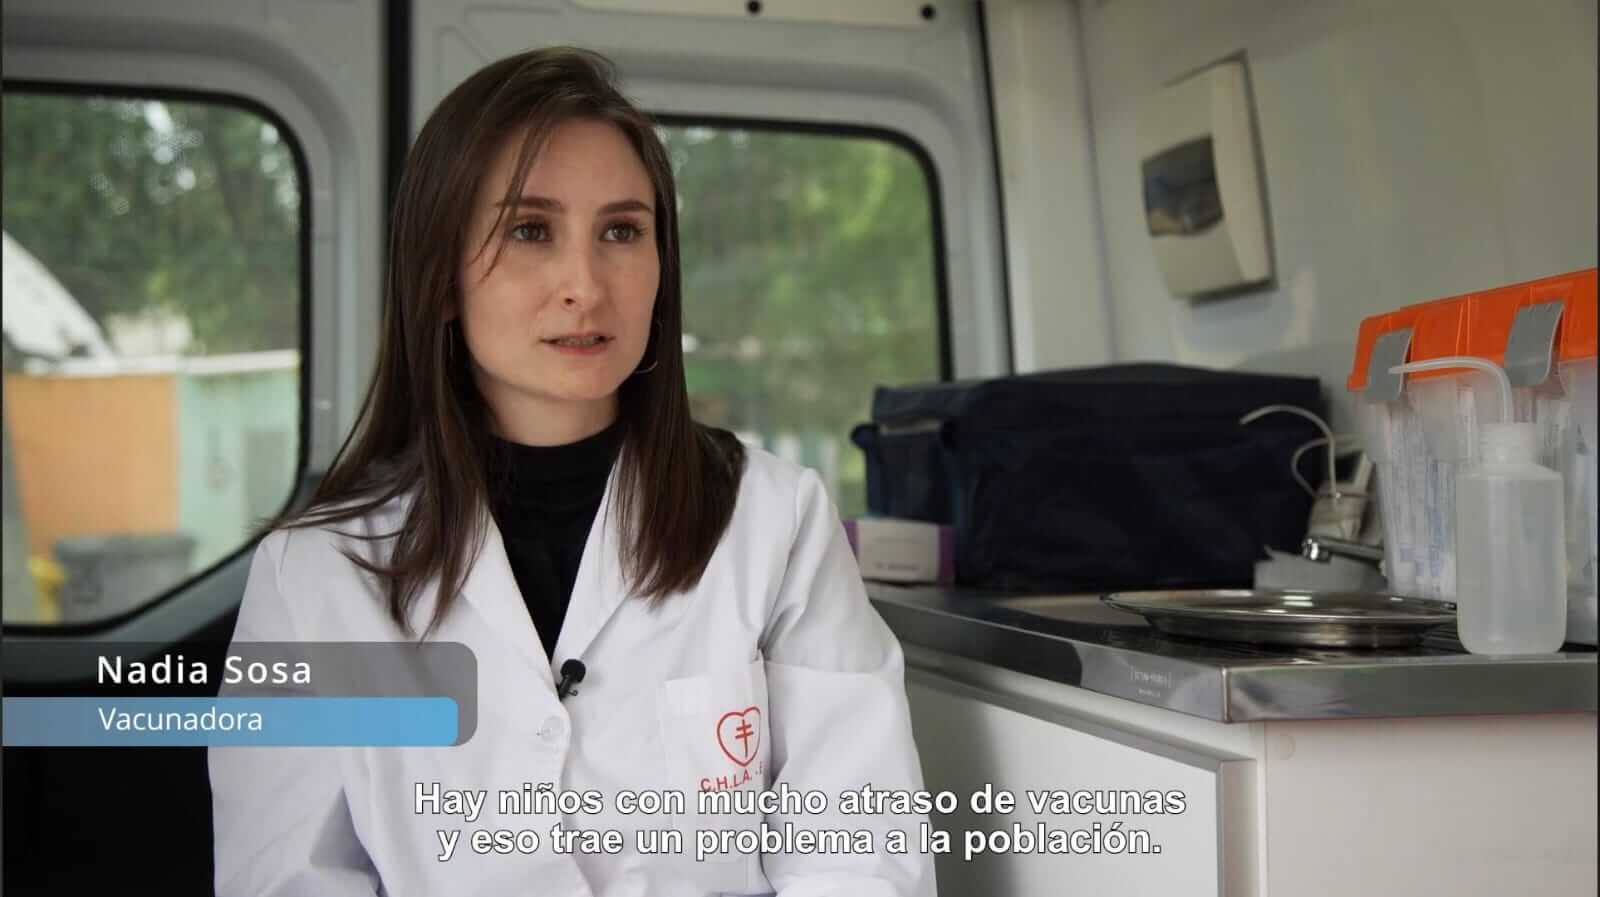 Vacunadora Nadia Sosa, siendo entrevistada en el móvil vacunatorio de la CHLAEP.